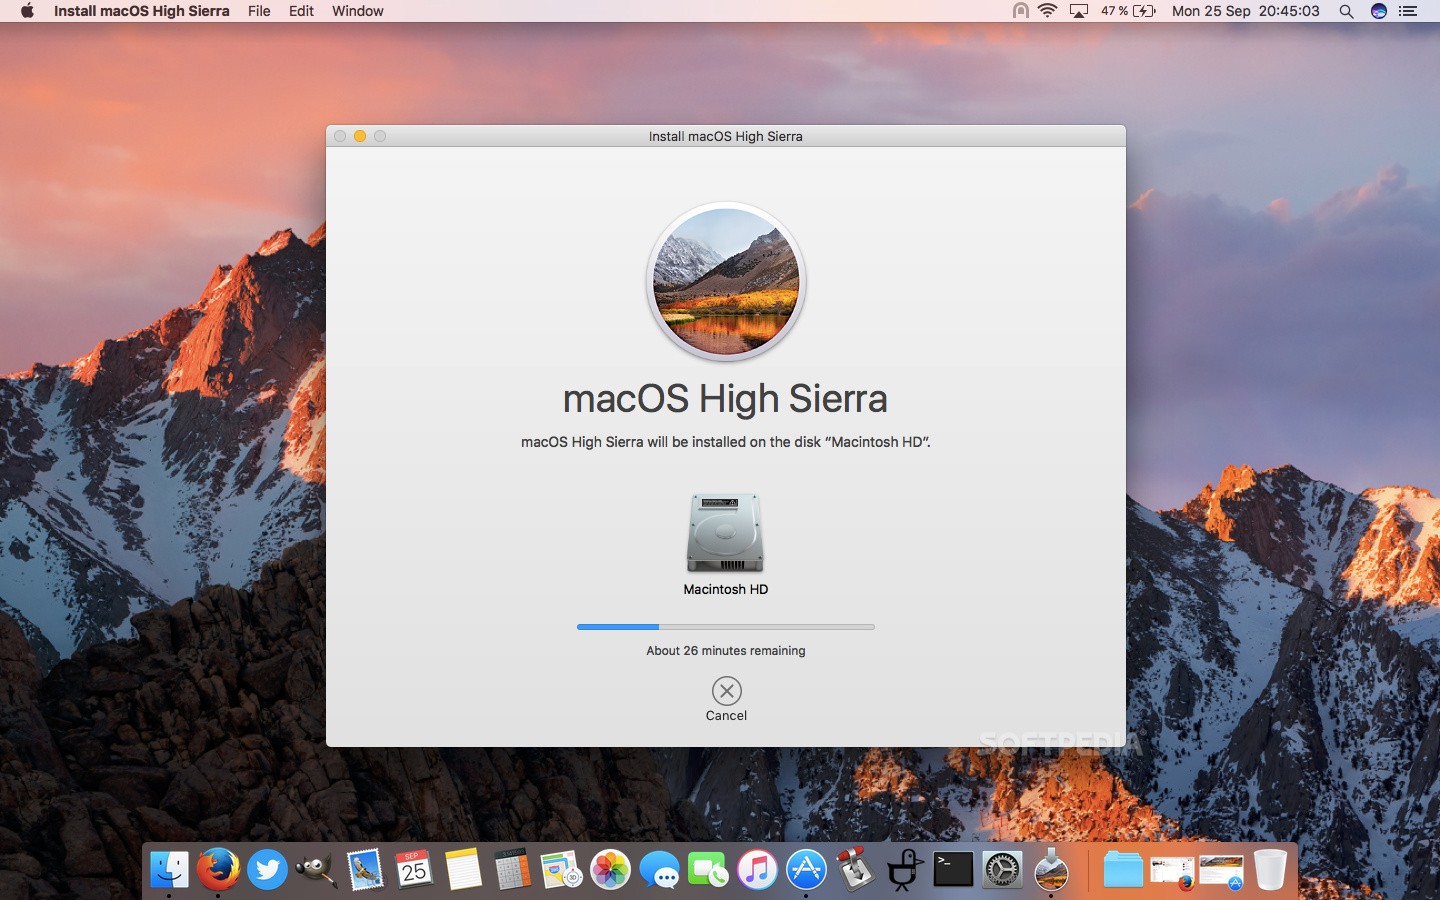 reformat for fresh install mac high sierra